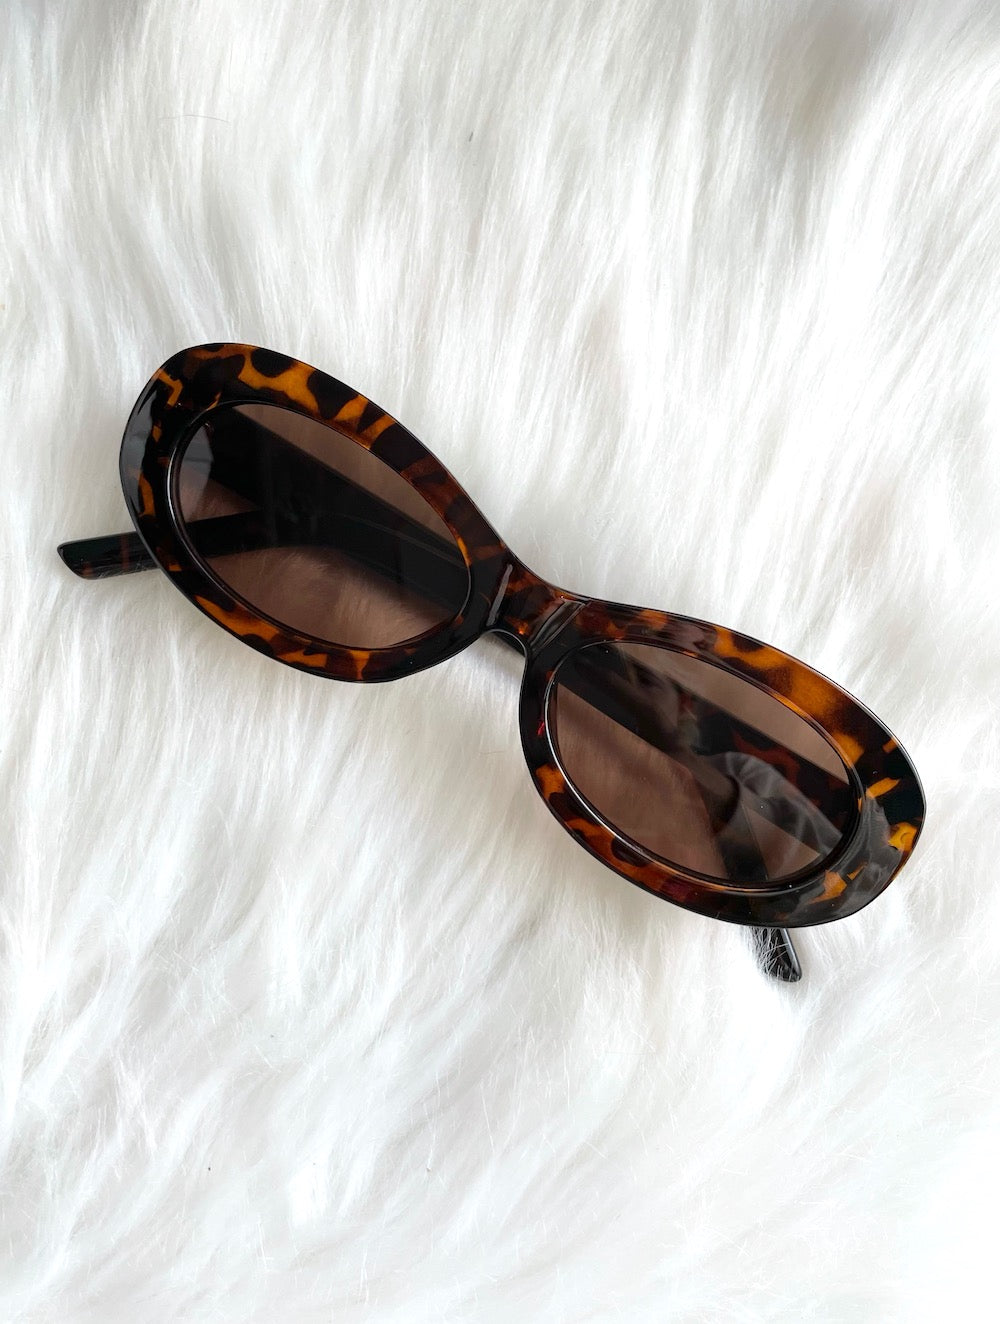 Skinny Oval Tortoiseshell Sunglasses